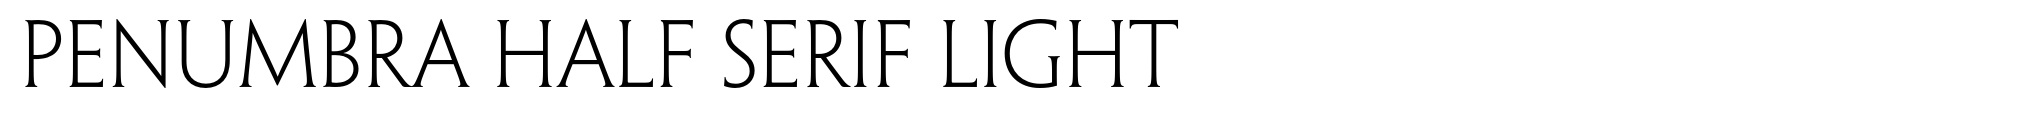 Penumbra Half Serif Light image